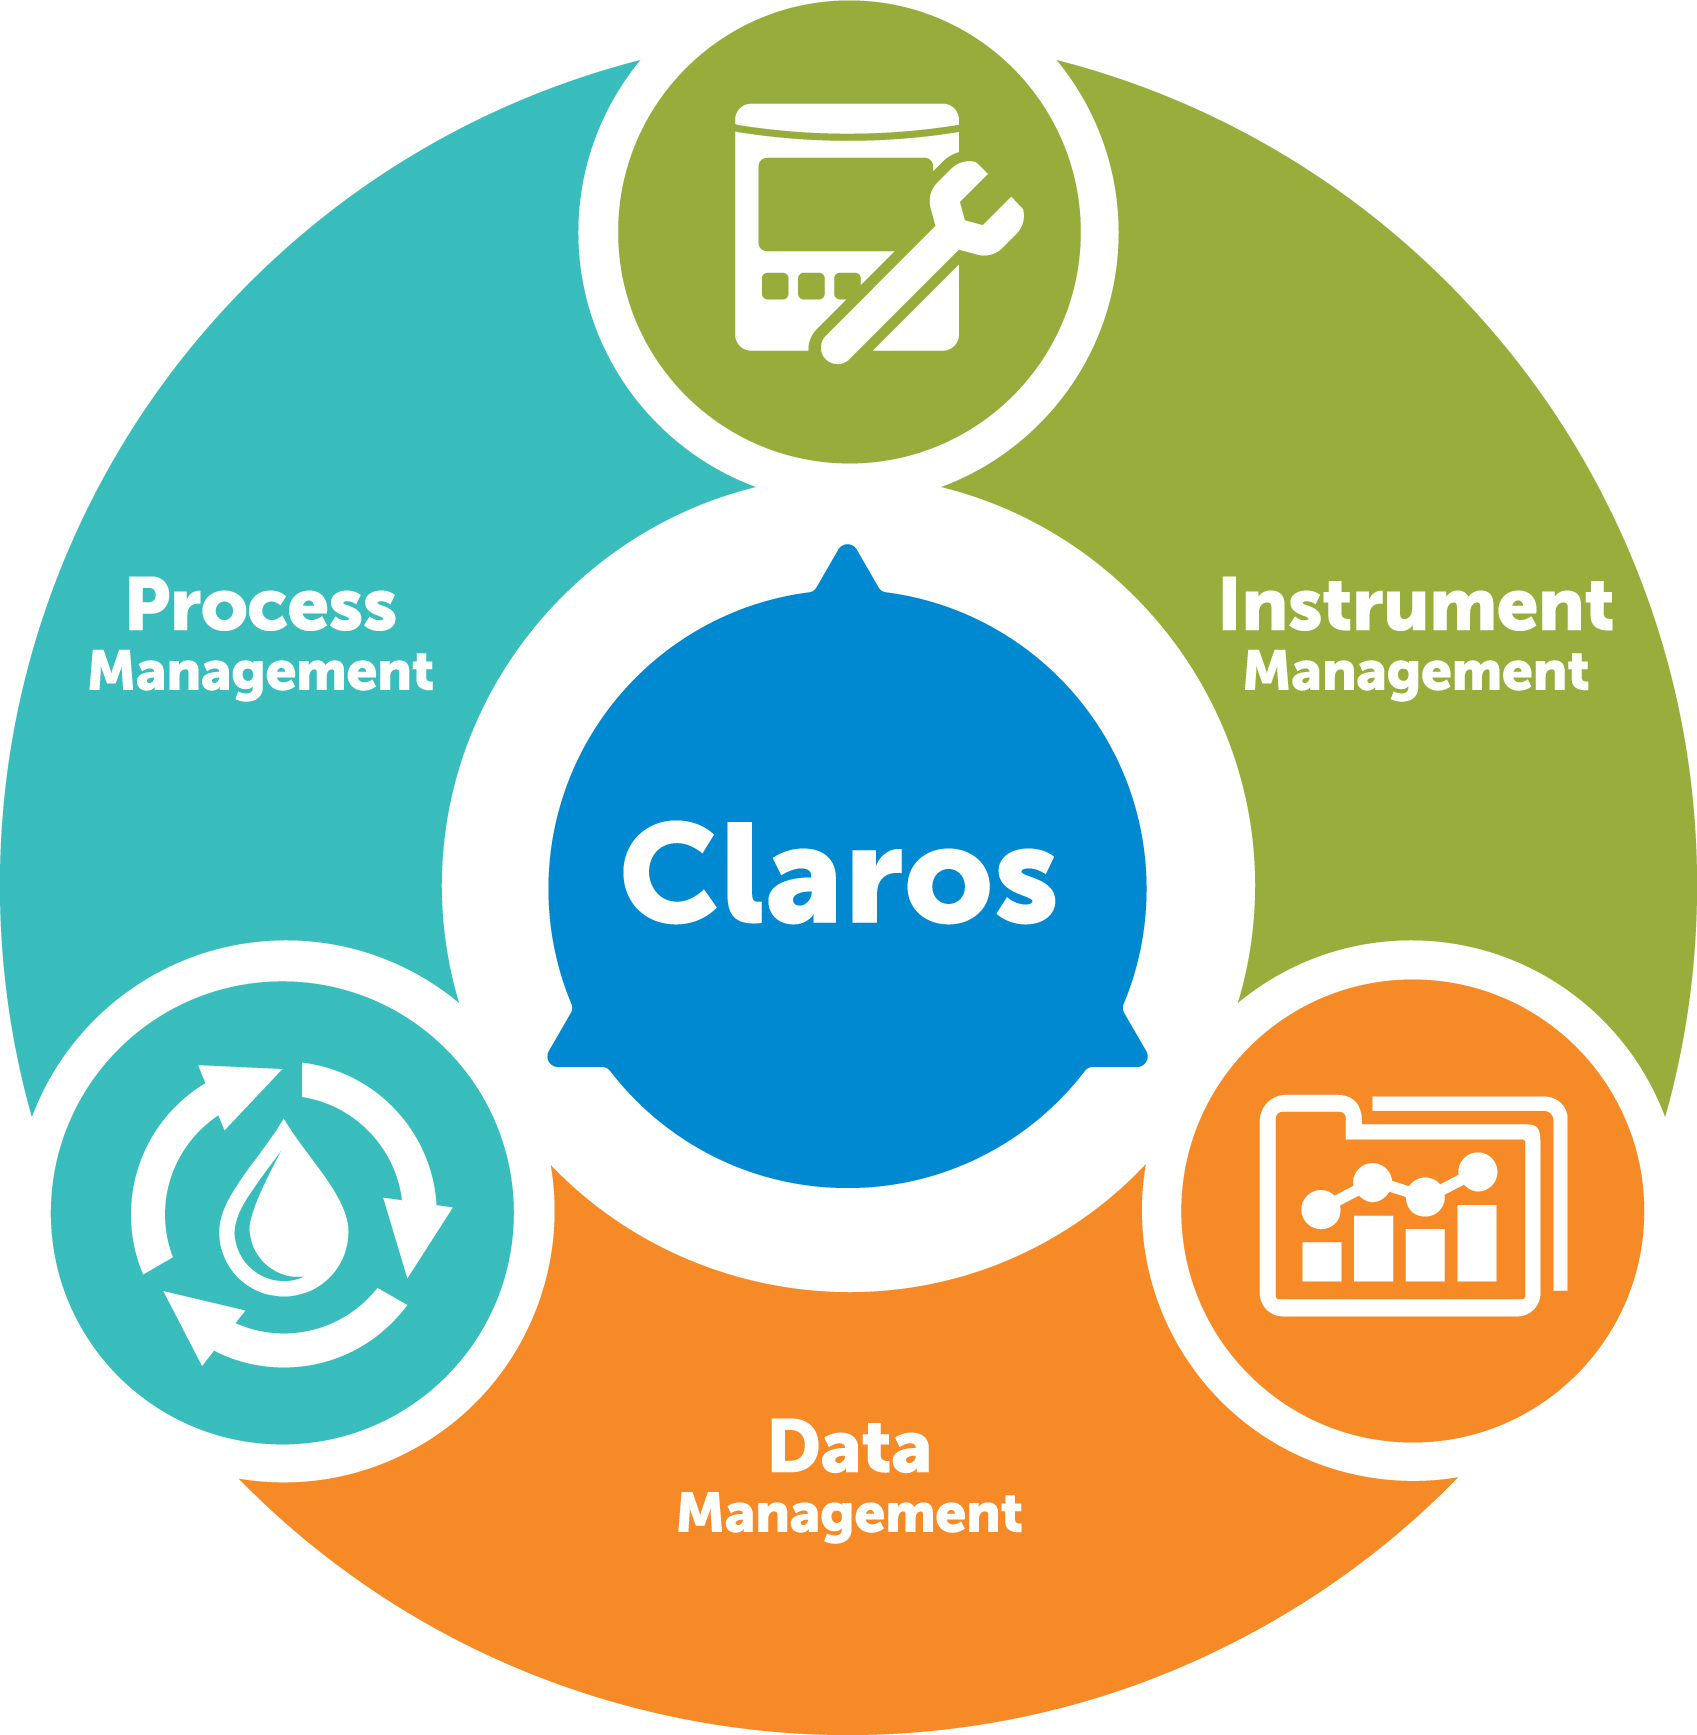 Altijd en overal inzicht in de status van uw instrumenten met Claros! 